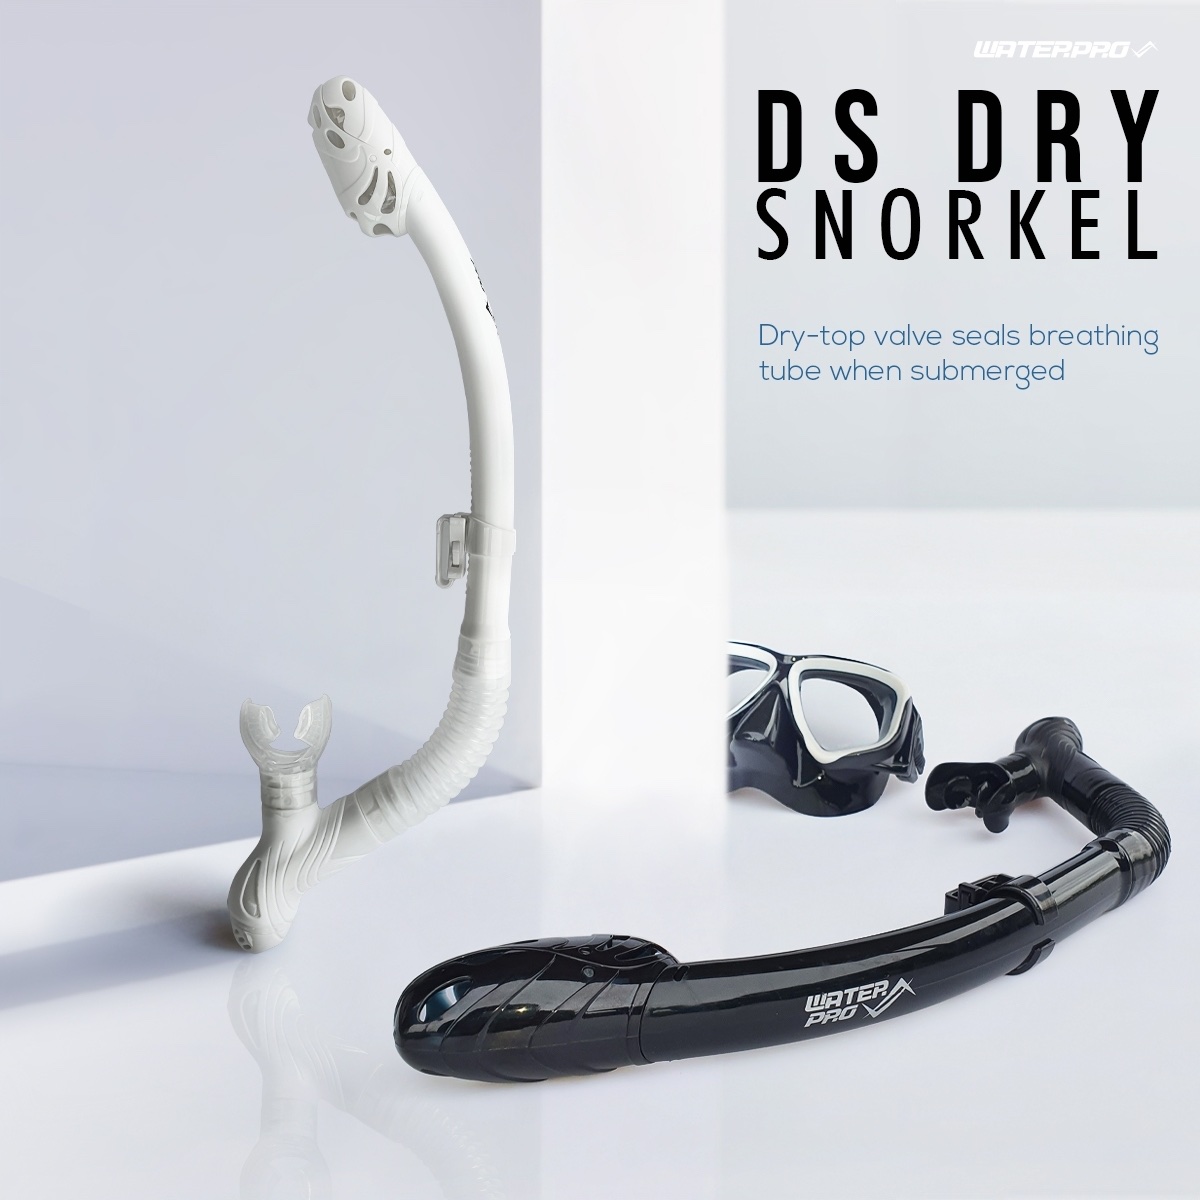 สนอกเกิ้ล - WATER PRO รุ่น DS Dry Snorkel - มีวาล์วป้องกันน้ำเข้า